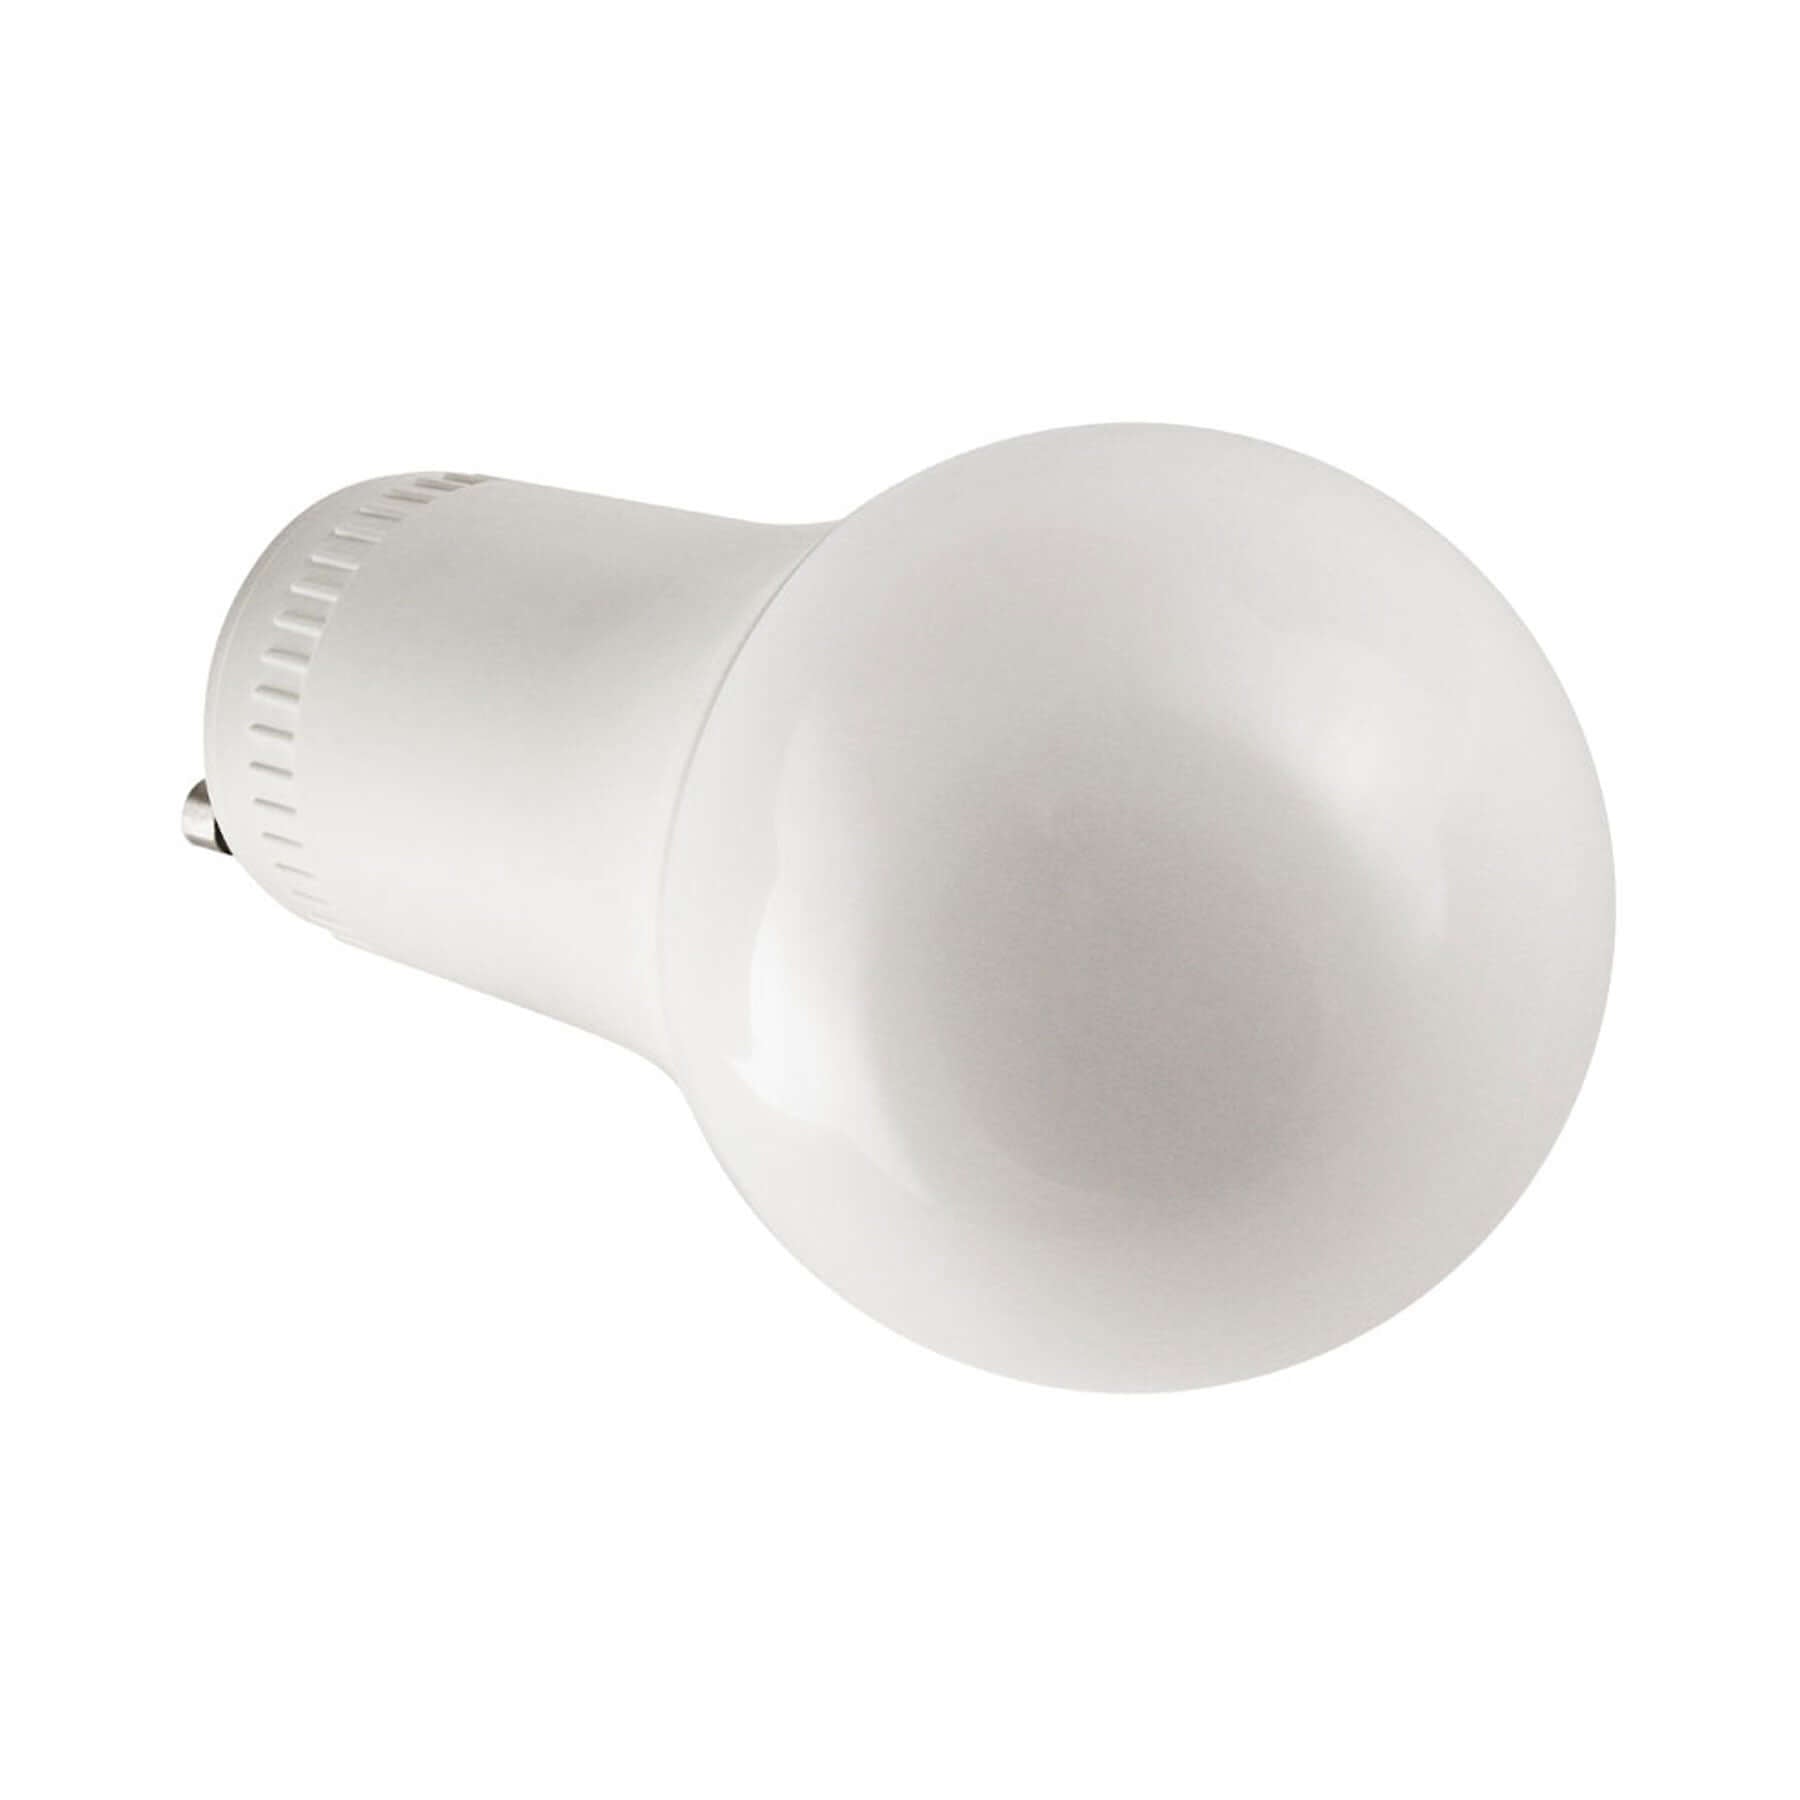 Viribright - 100-Watt Equivalent A21 GU24 LED Light Bulb, Energy Star / CEC / JA8 - 450119-6ES